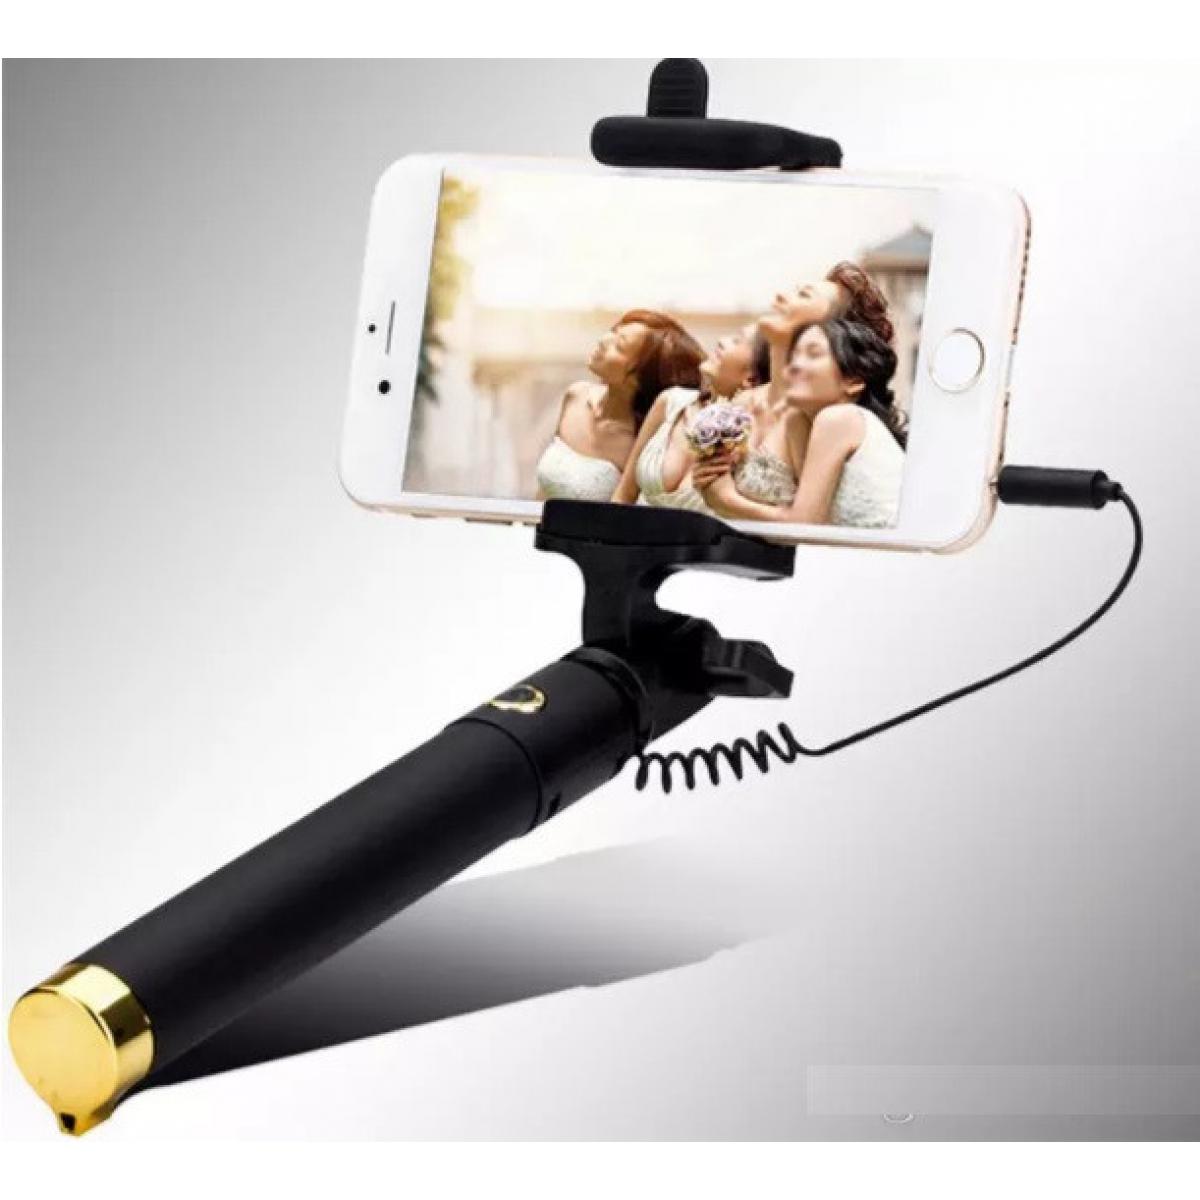 Shot - Perche Selfie Metal pour "WIKO View 5" Smartphone avec Cable Jack Selfie Stick Android IOS Reglable Bouton Photo (OR) - Autres accessoires smartphone